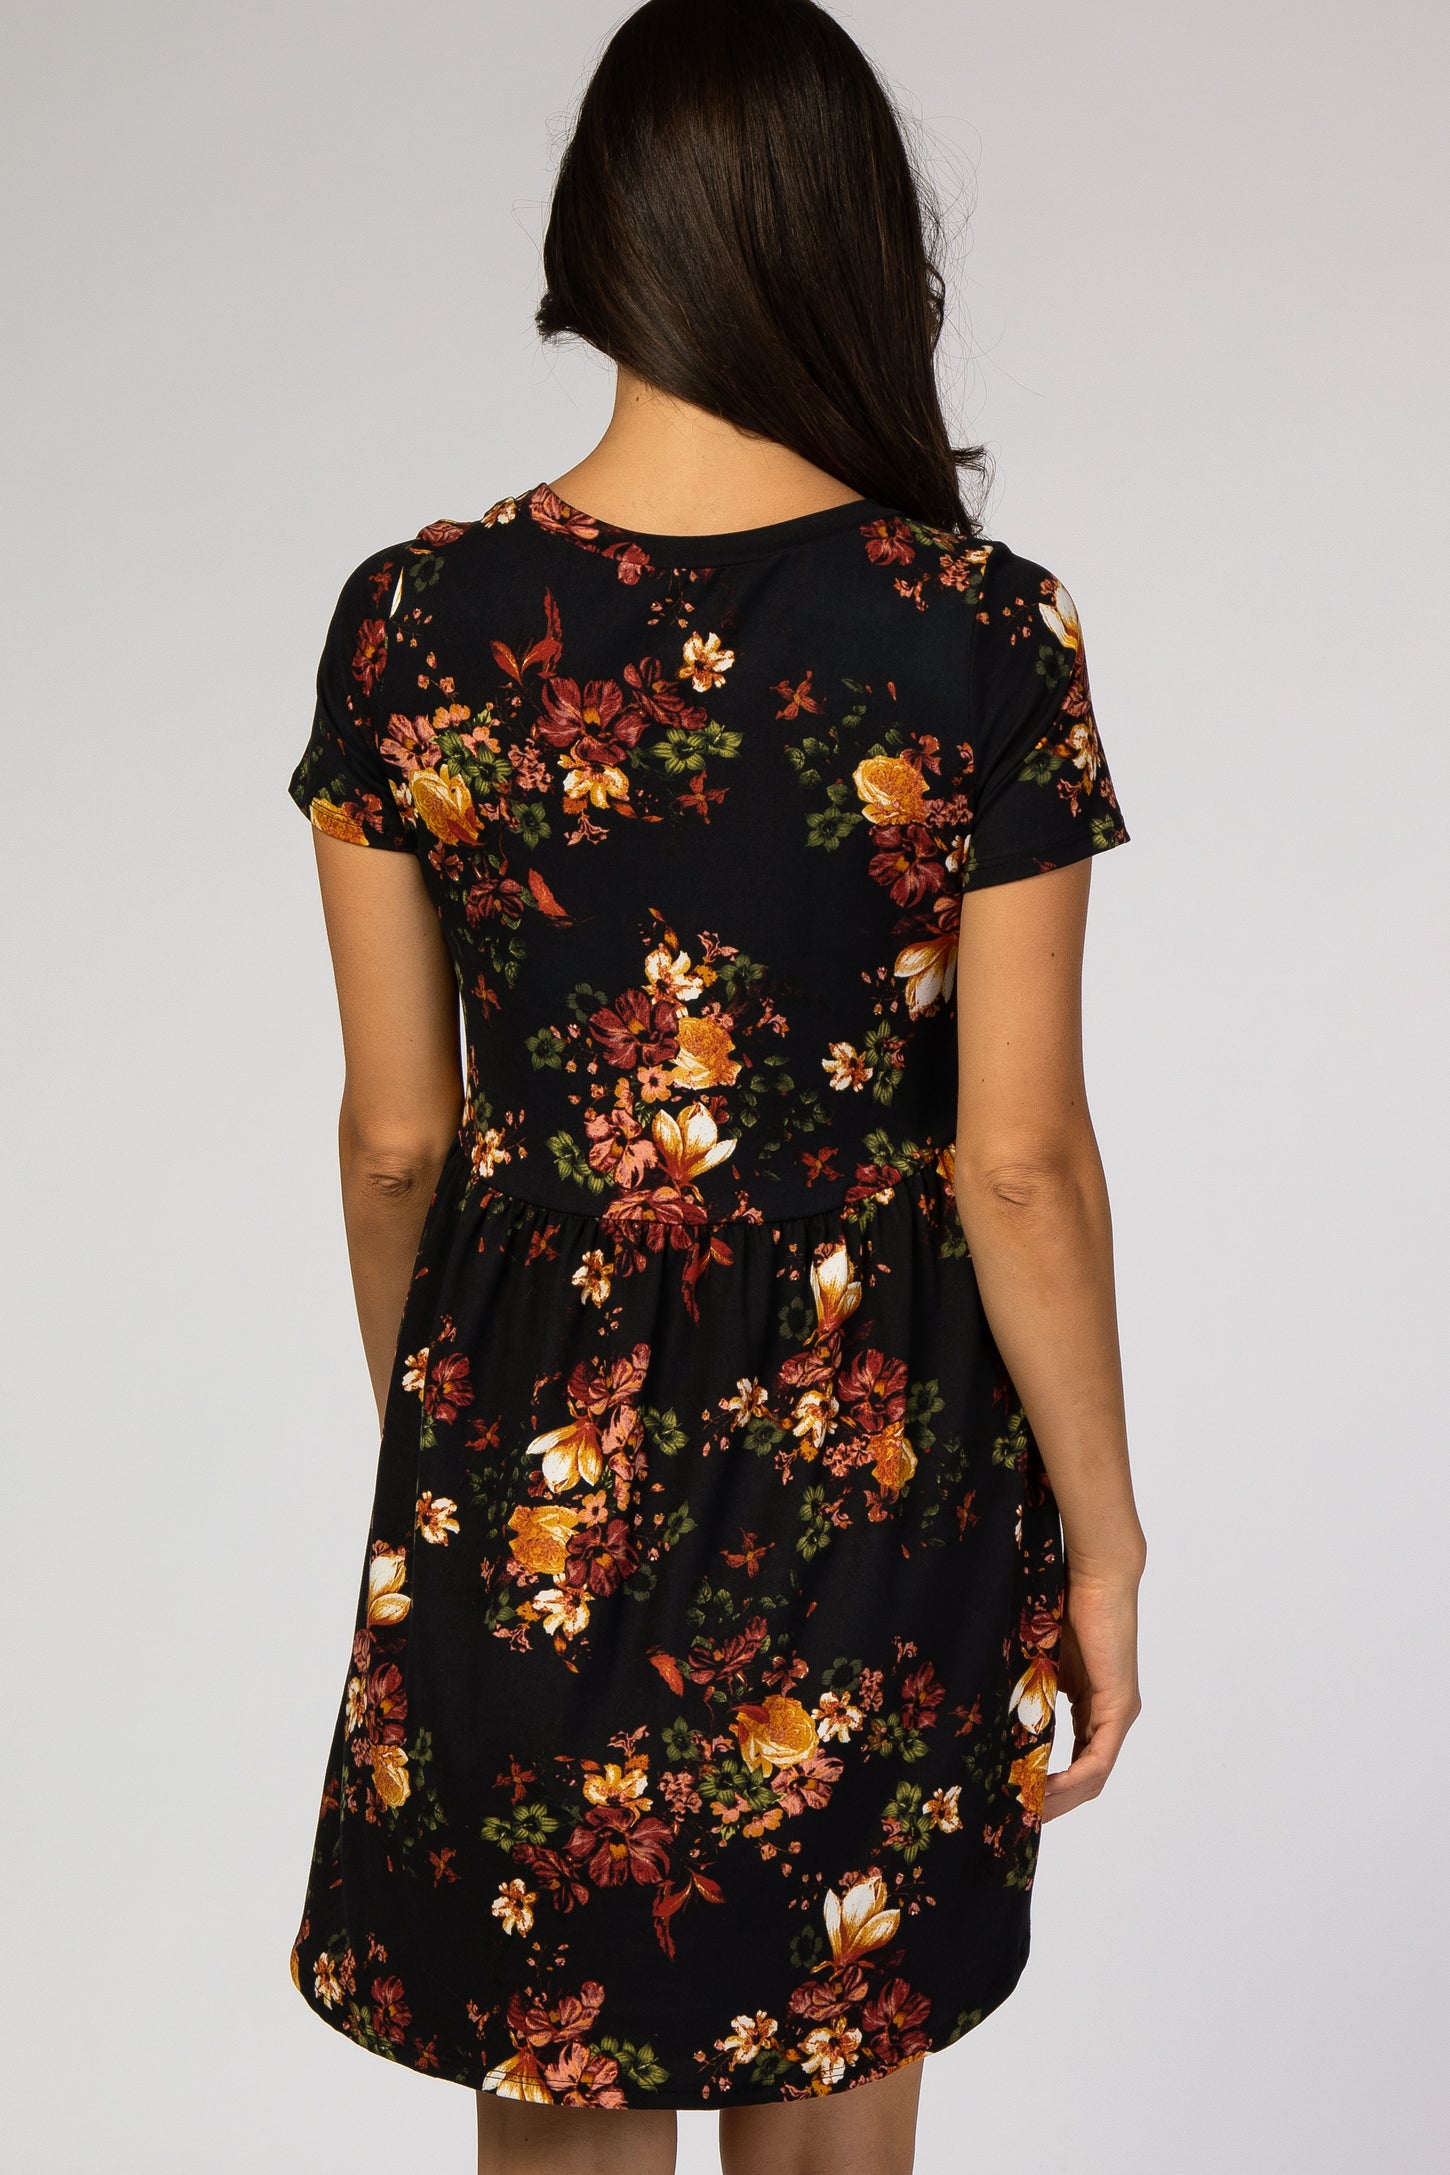 Black Floral Short Sleeve Dress